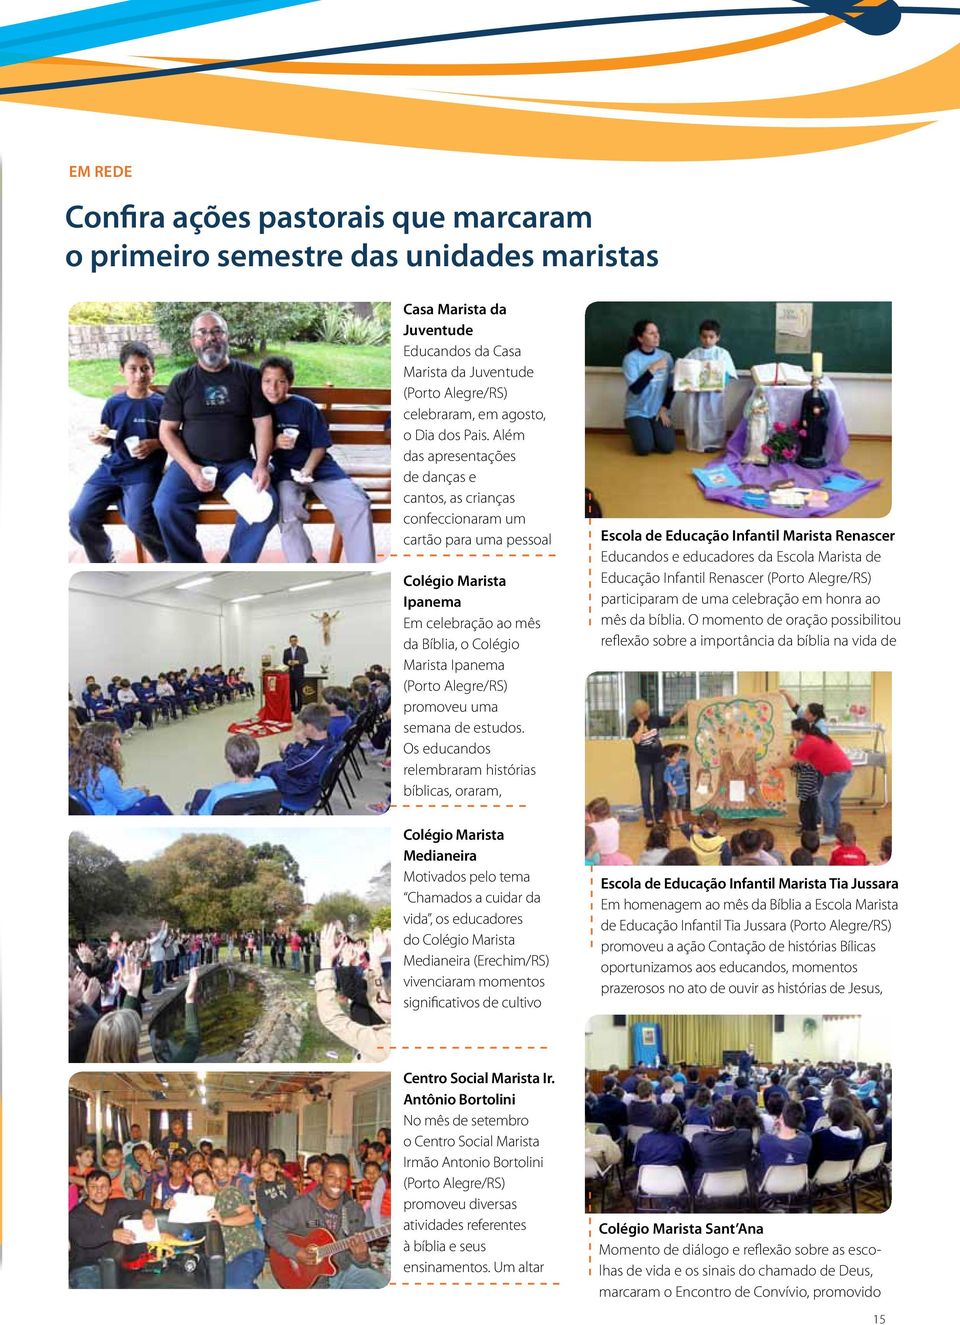 Além das apresentações de danças e cantos, as crianças confeccionaram um cartão para uma pessoal Colégio Marista Ipanema Em celebração ao mês da Bíblia, o Colégio Marista Ipanema (Porto Alegre/RS)